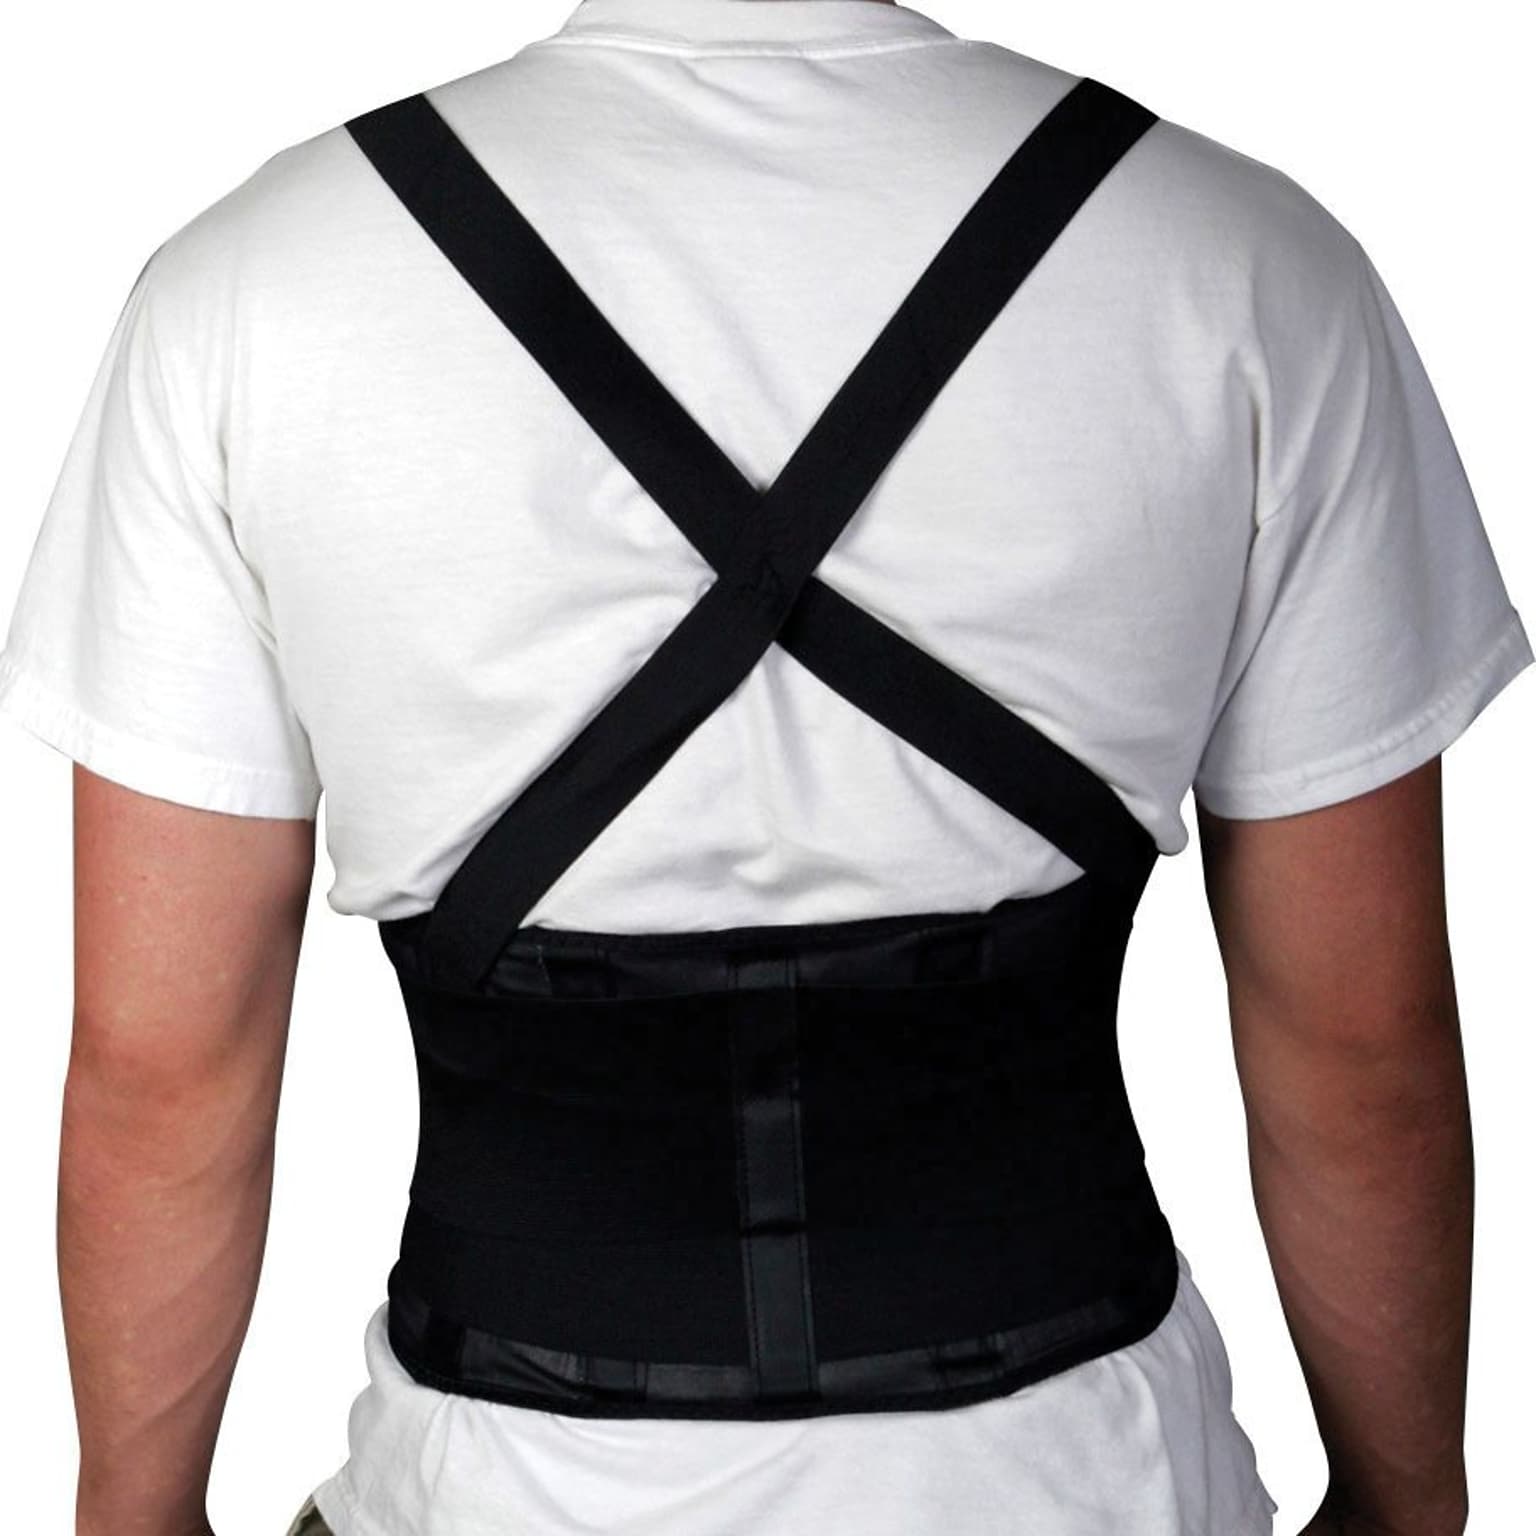 Medline Standard Back Support with Suspenders, Black, Large, 34 - 38 L x 10 H, Each